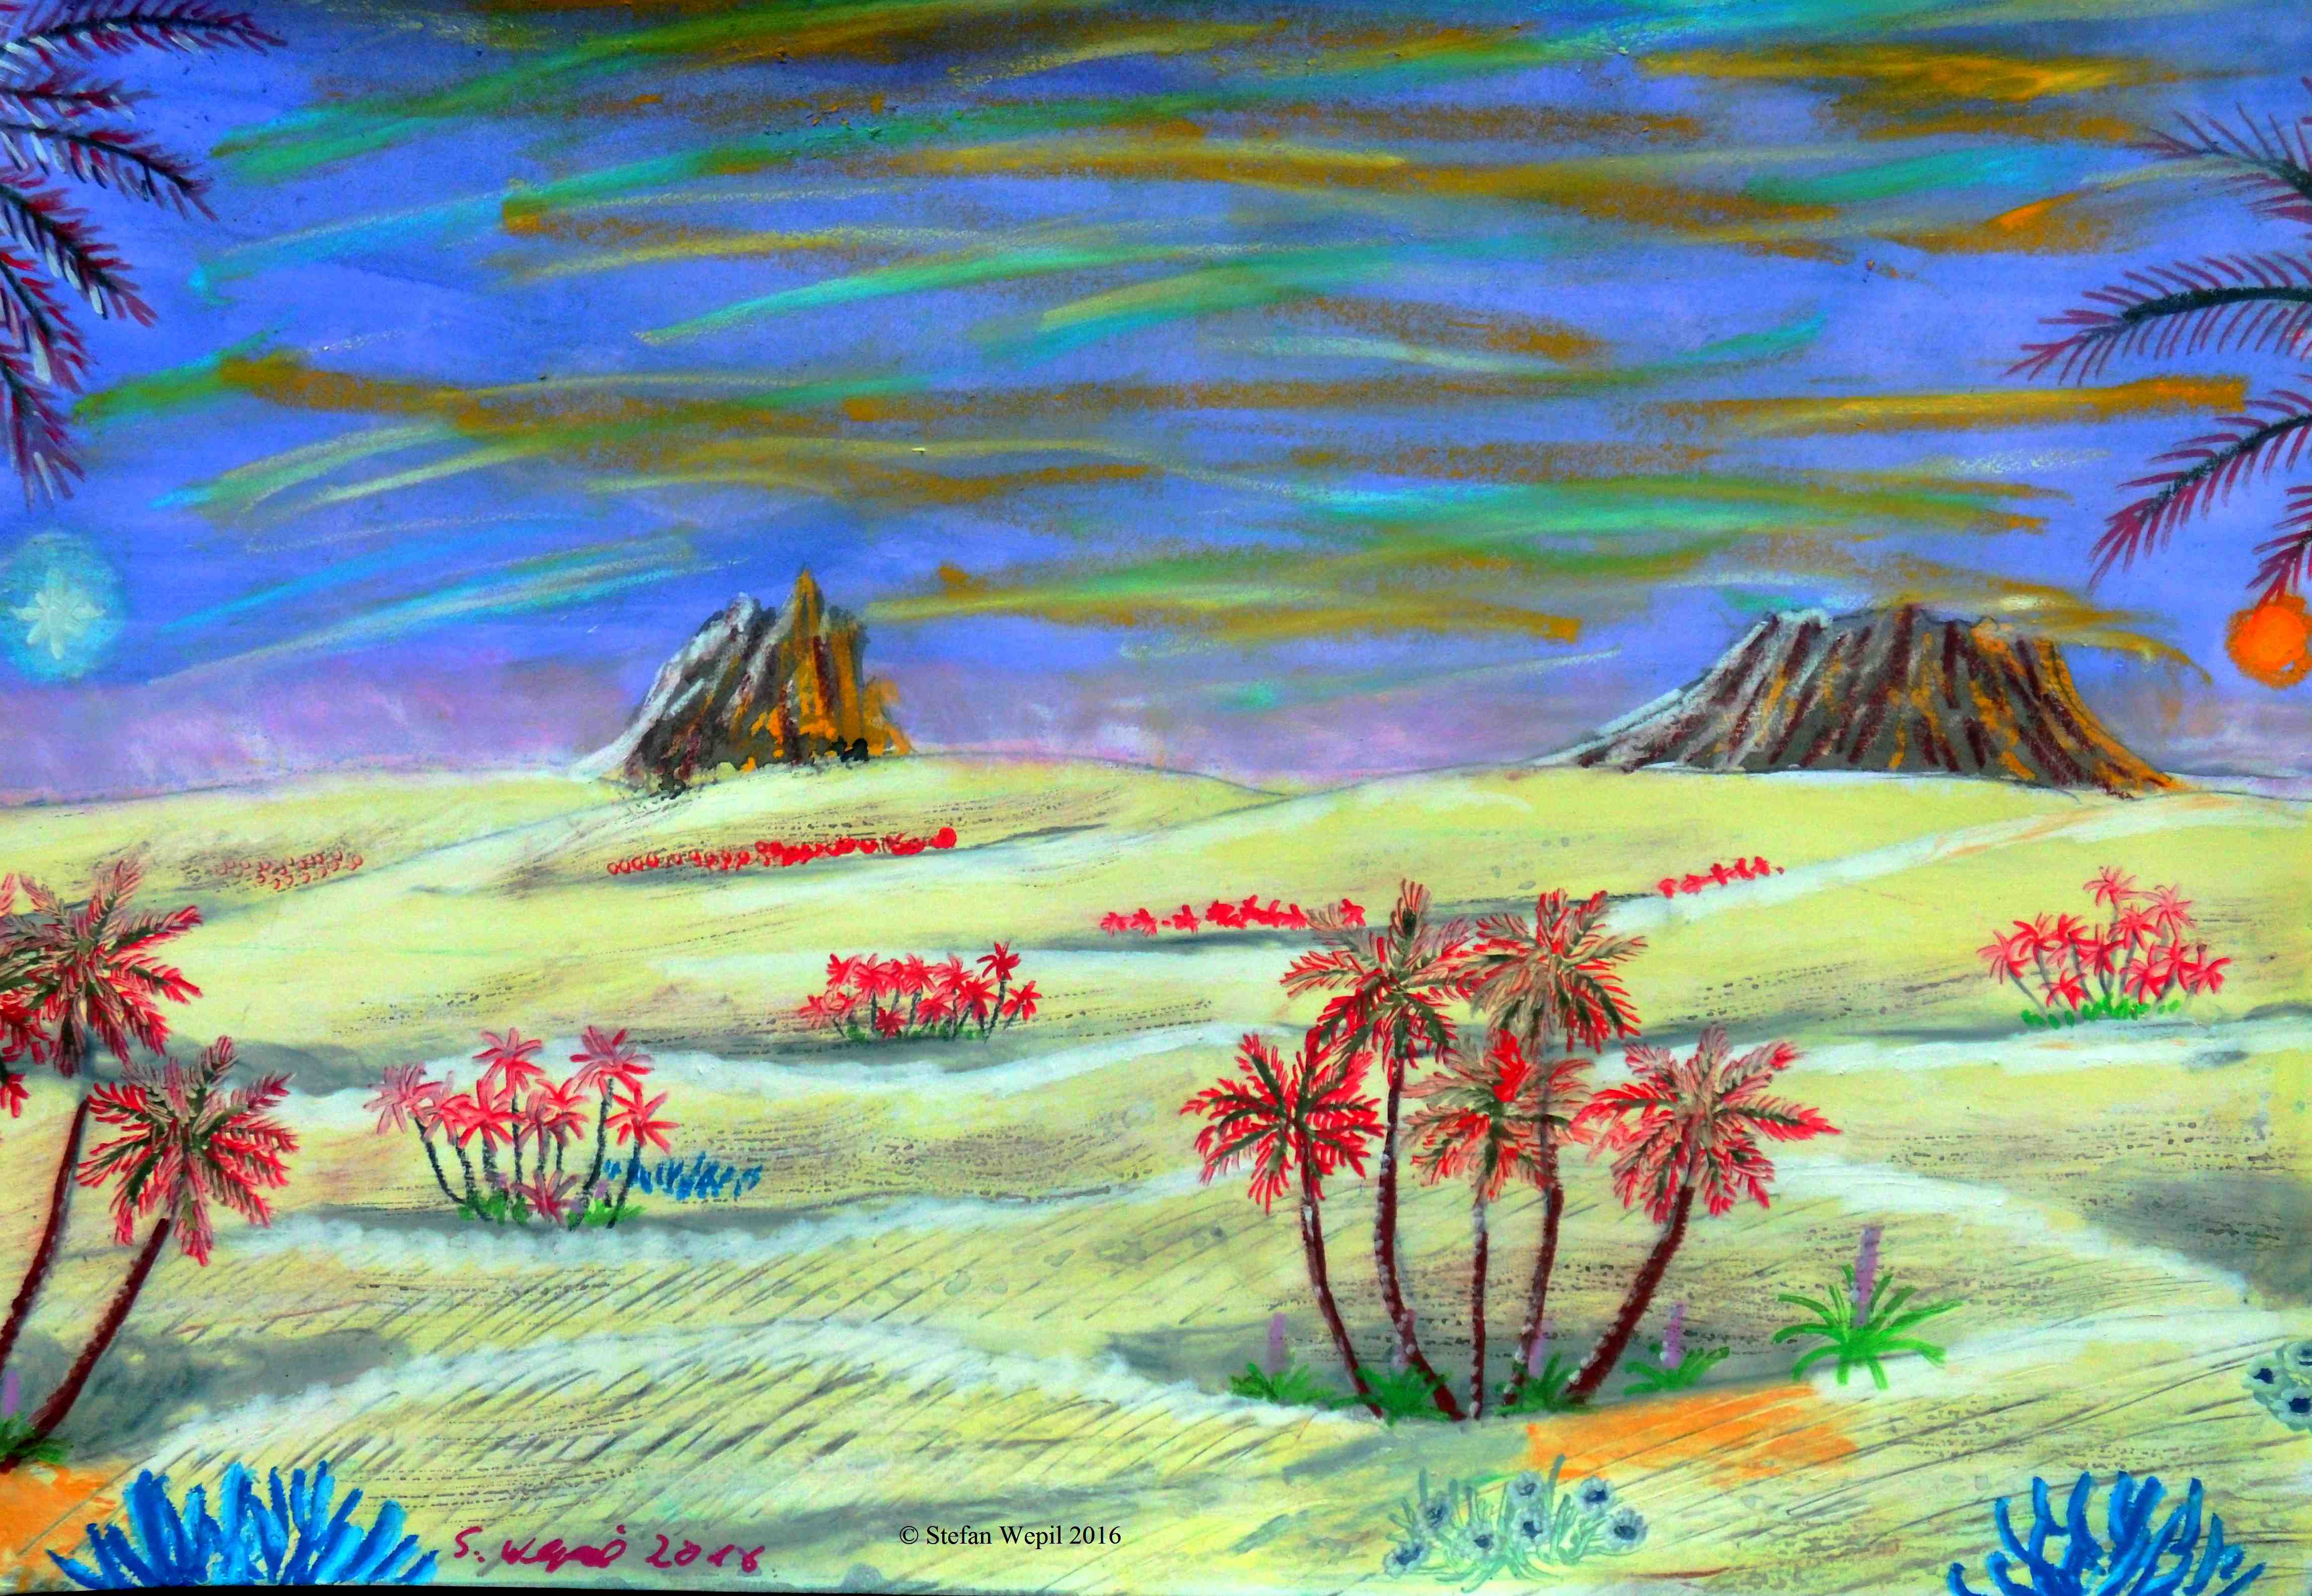 Wüste auf Xamour (C) Stefan Wepil